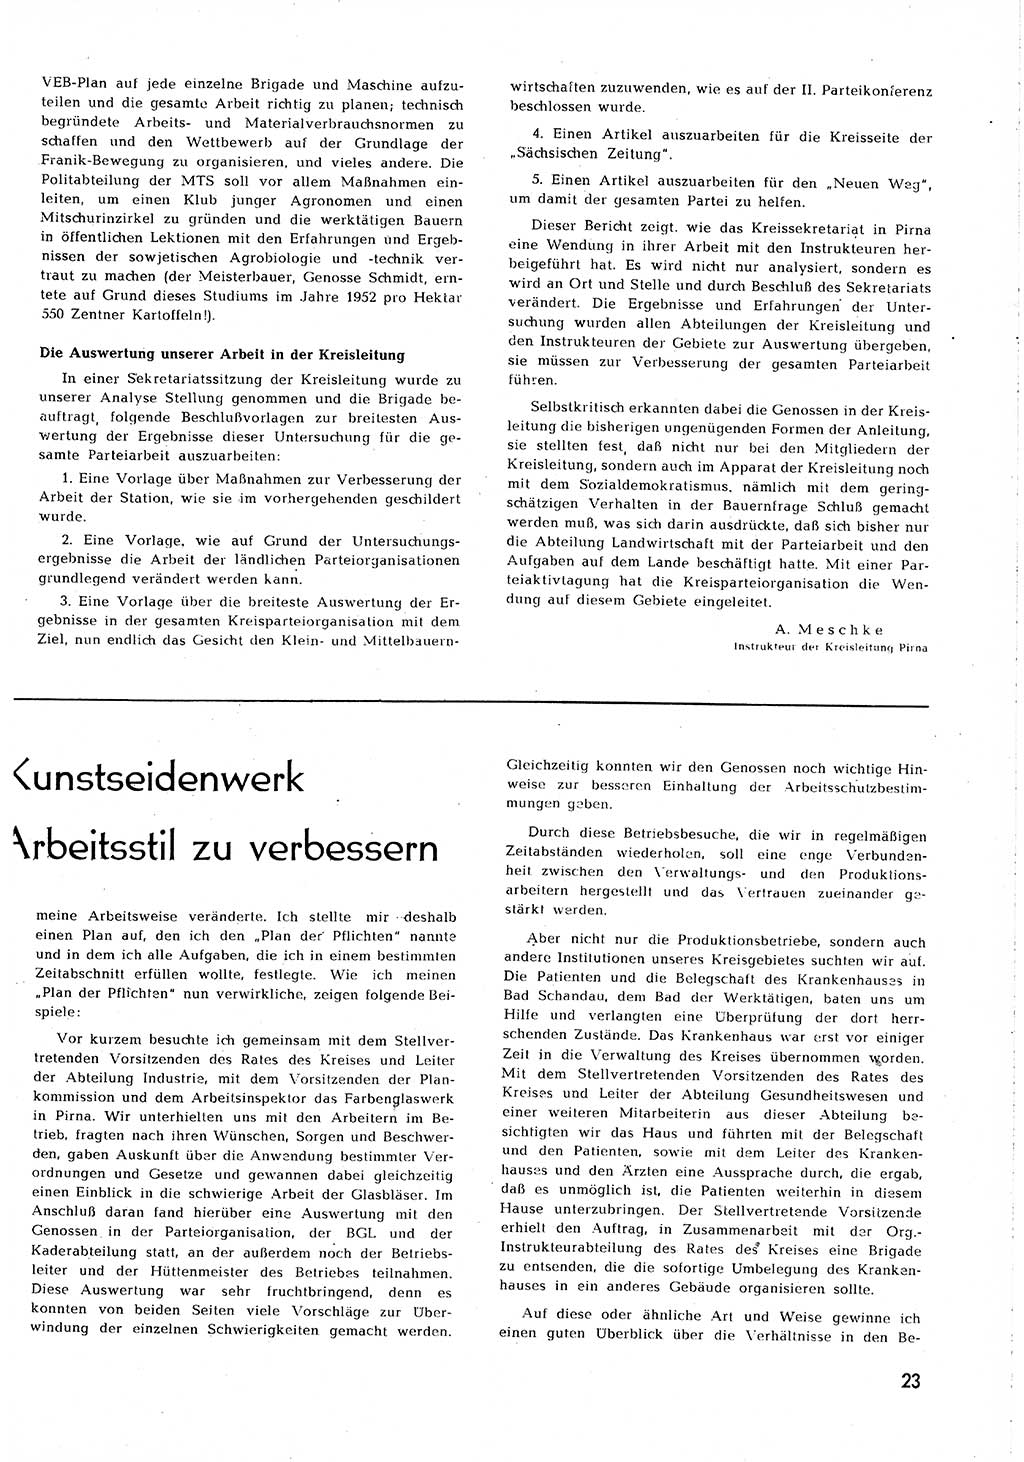 Neuer Weg (NW), Organ des Zentralkomitees (ZK) [Sozialistische Einheitspartei Deutschlands (SED)] für alle Parteiarbeiter, 8. Jahrgang [Deutsche Demokratische Republik (DDR)] 1953, Heft 2/23 (NW ZK SED DDR 1953, H. 2/23)